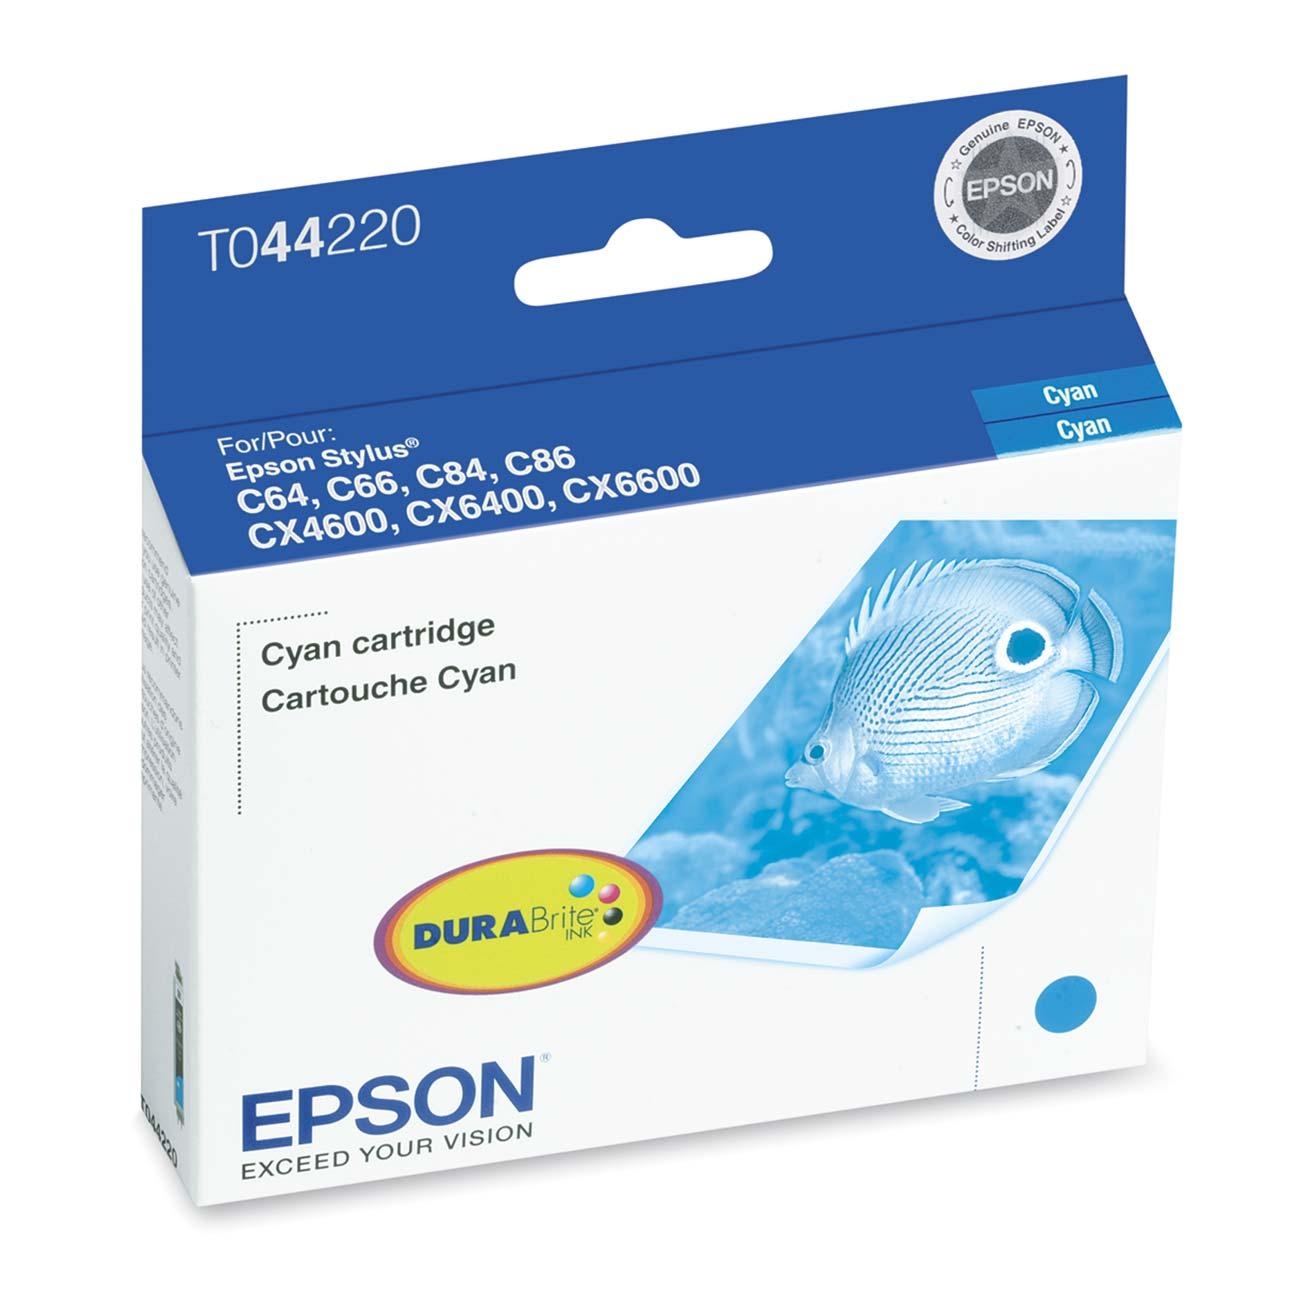 EPSON T044220 Ink Cartridge Cyan